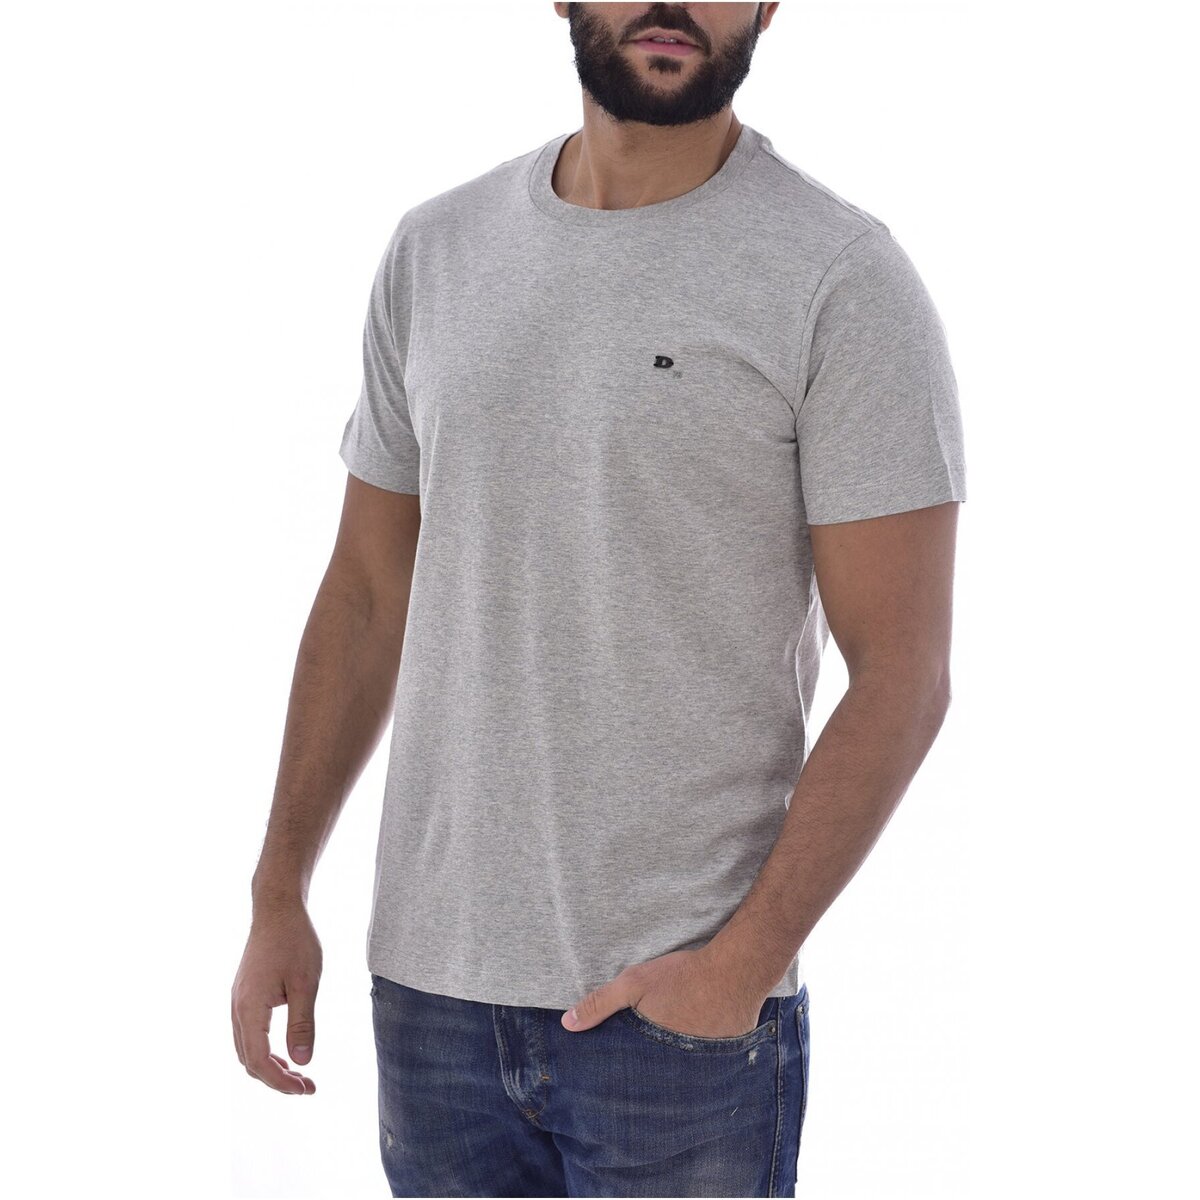 Vêtements Homme T-shirts manches courtes Diesel T-ZOSIMOSNEW Gris